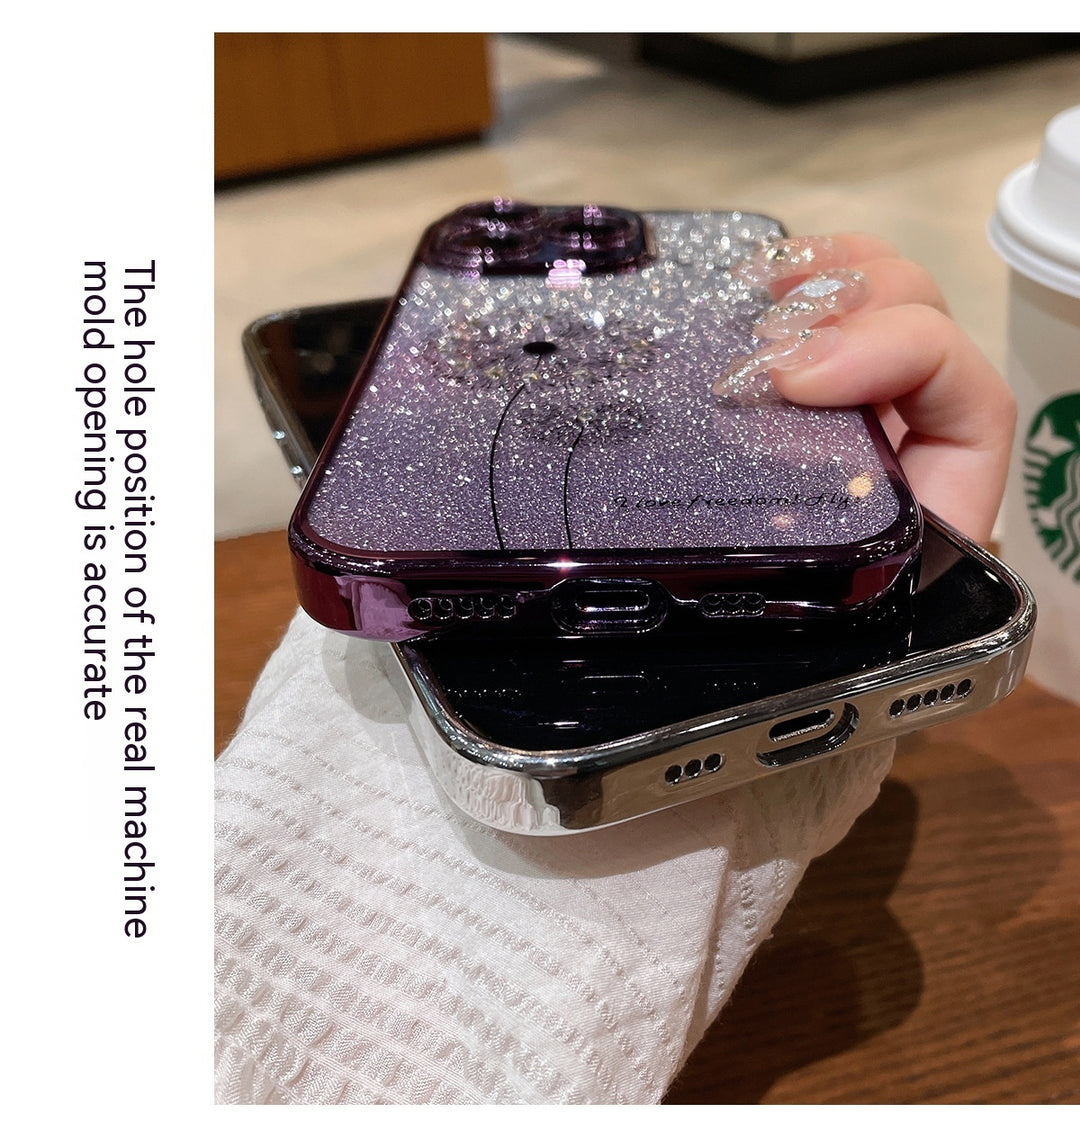 Dandelion Gradient Glitter Silicone Phone Case